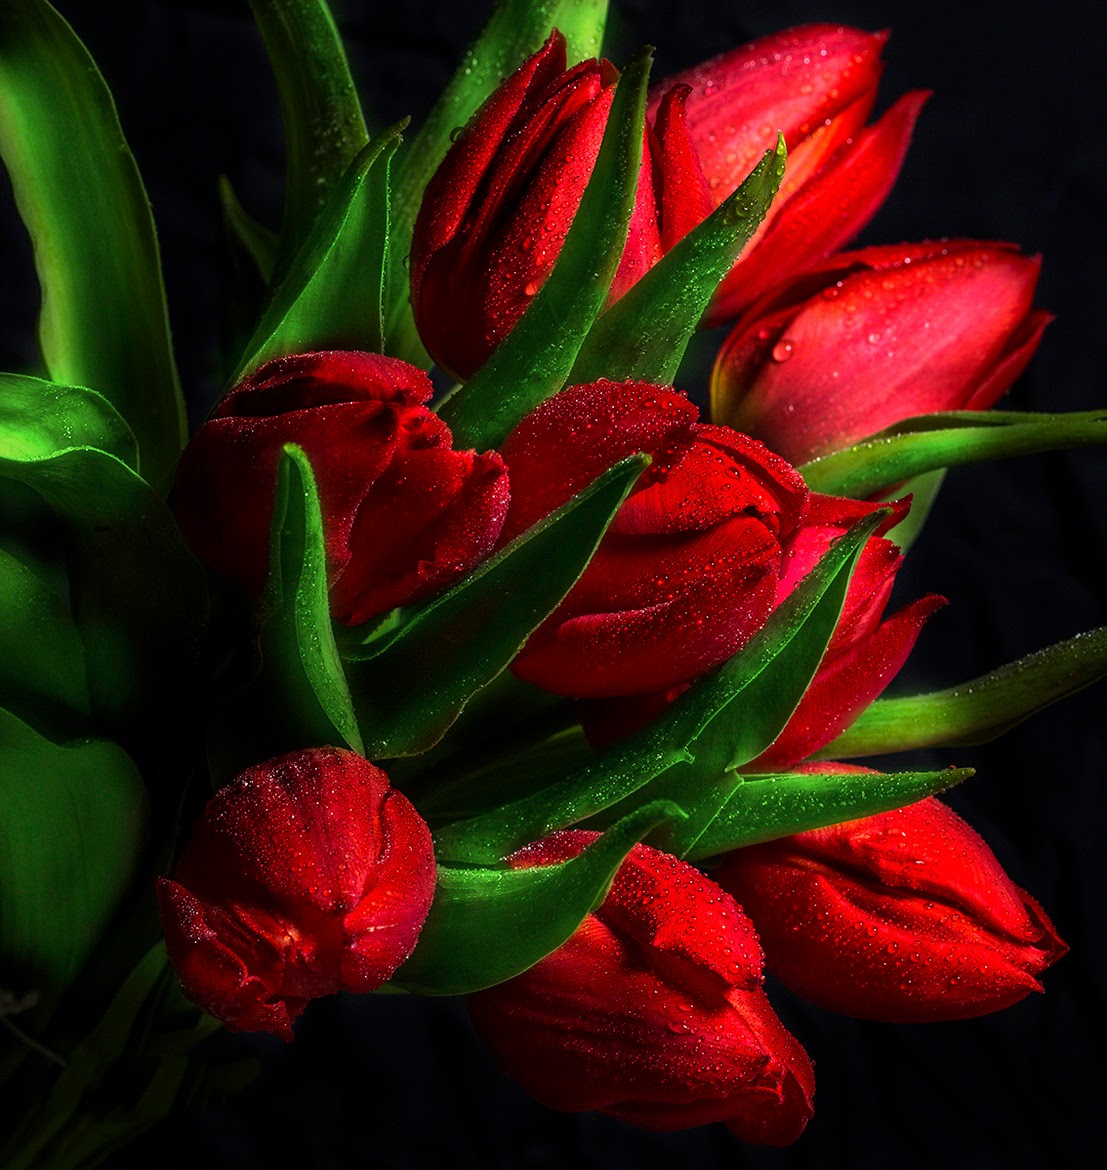 >>>El cajon de mis sueños, deseos. dudas.....>>> - Página 10 Fotos-gratis-de-flores-tulipanes-de-colores-free-colorful-tulips-photos-+(28)